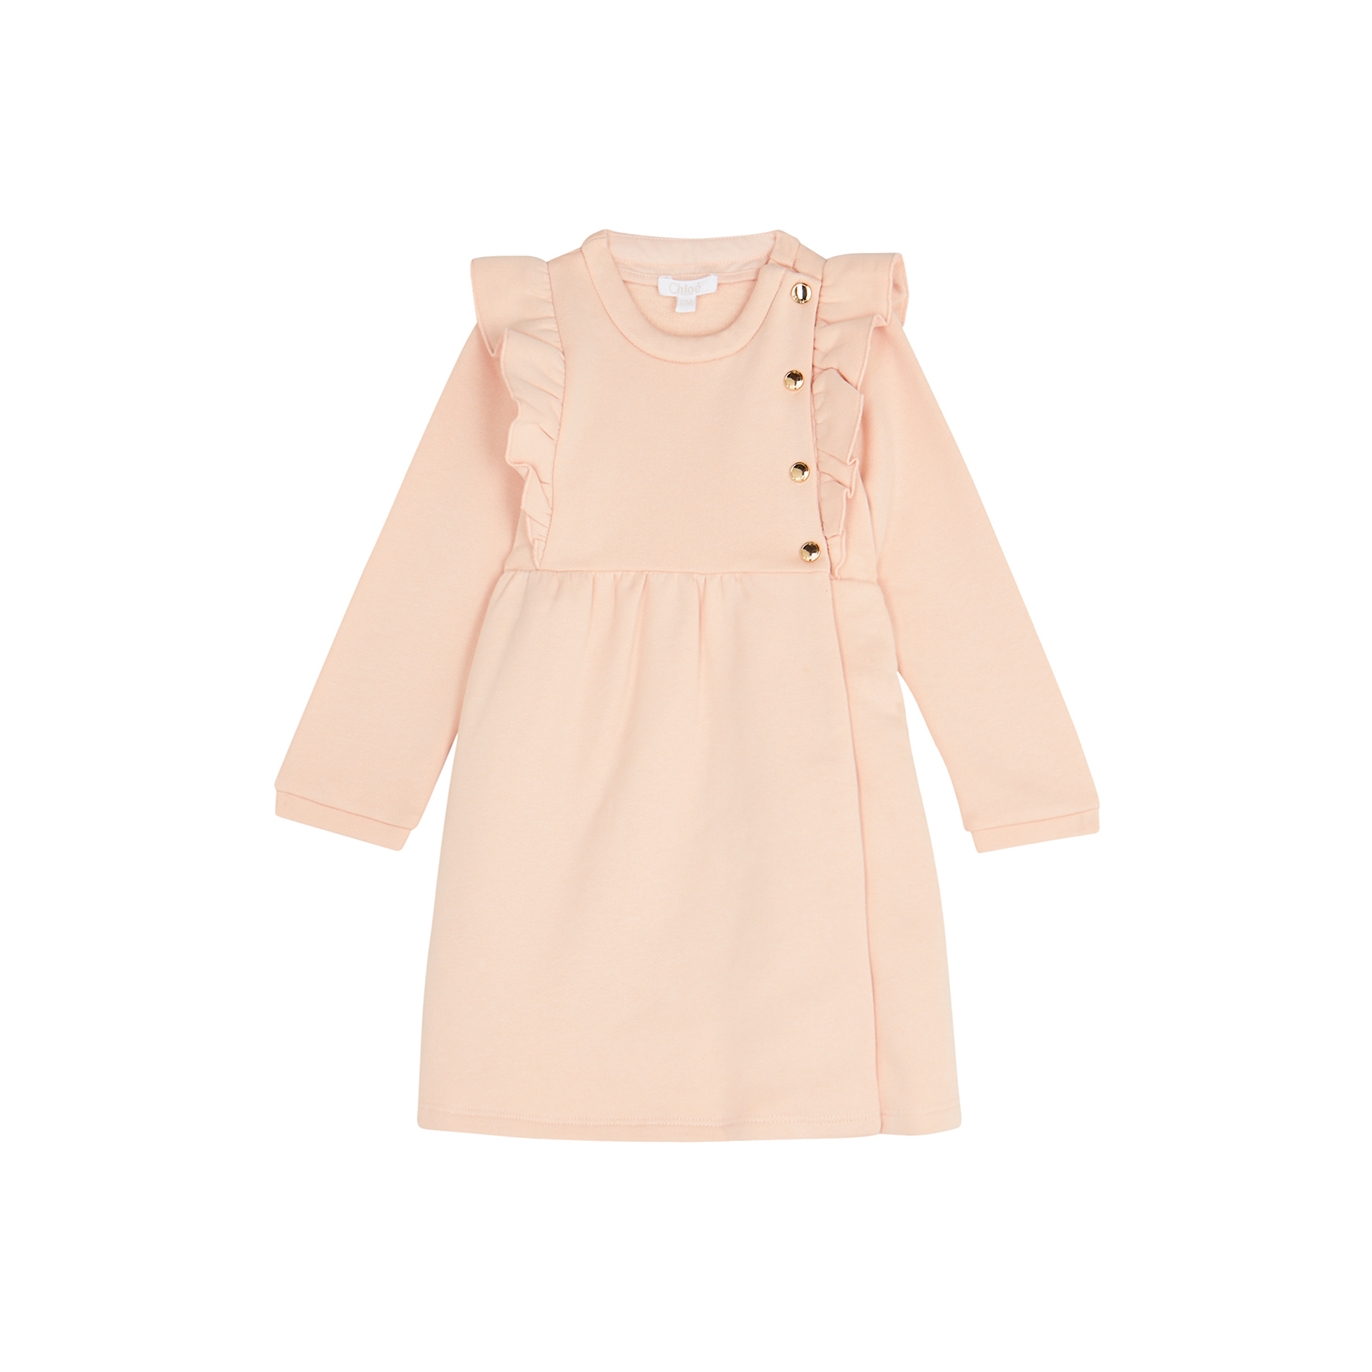 Chloé Kids Pink Ruffled Cotton Dress (6-18 Months) - 6 Months